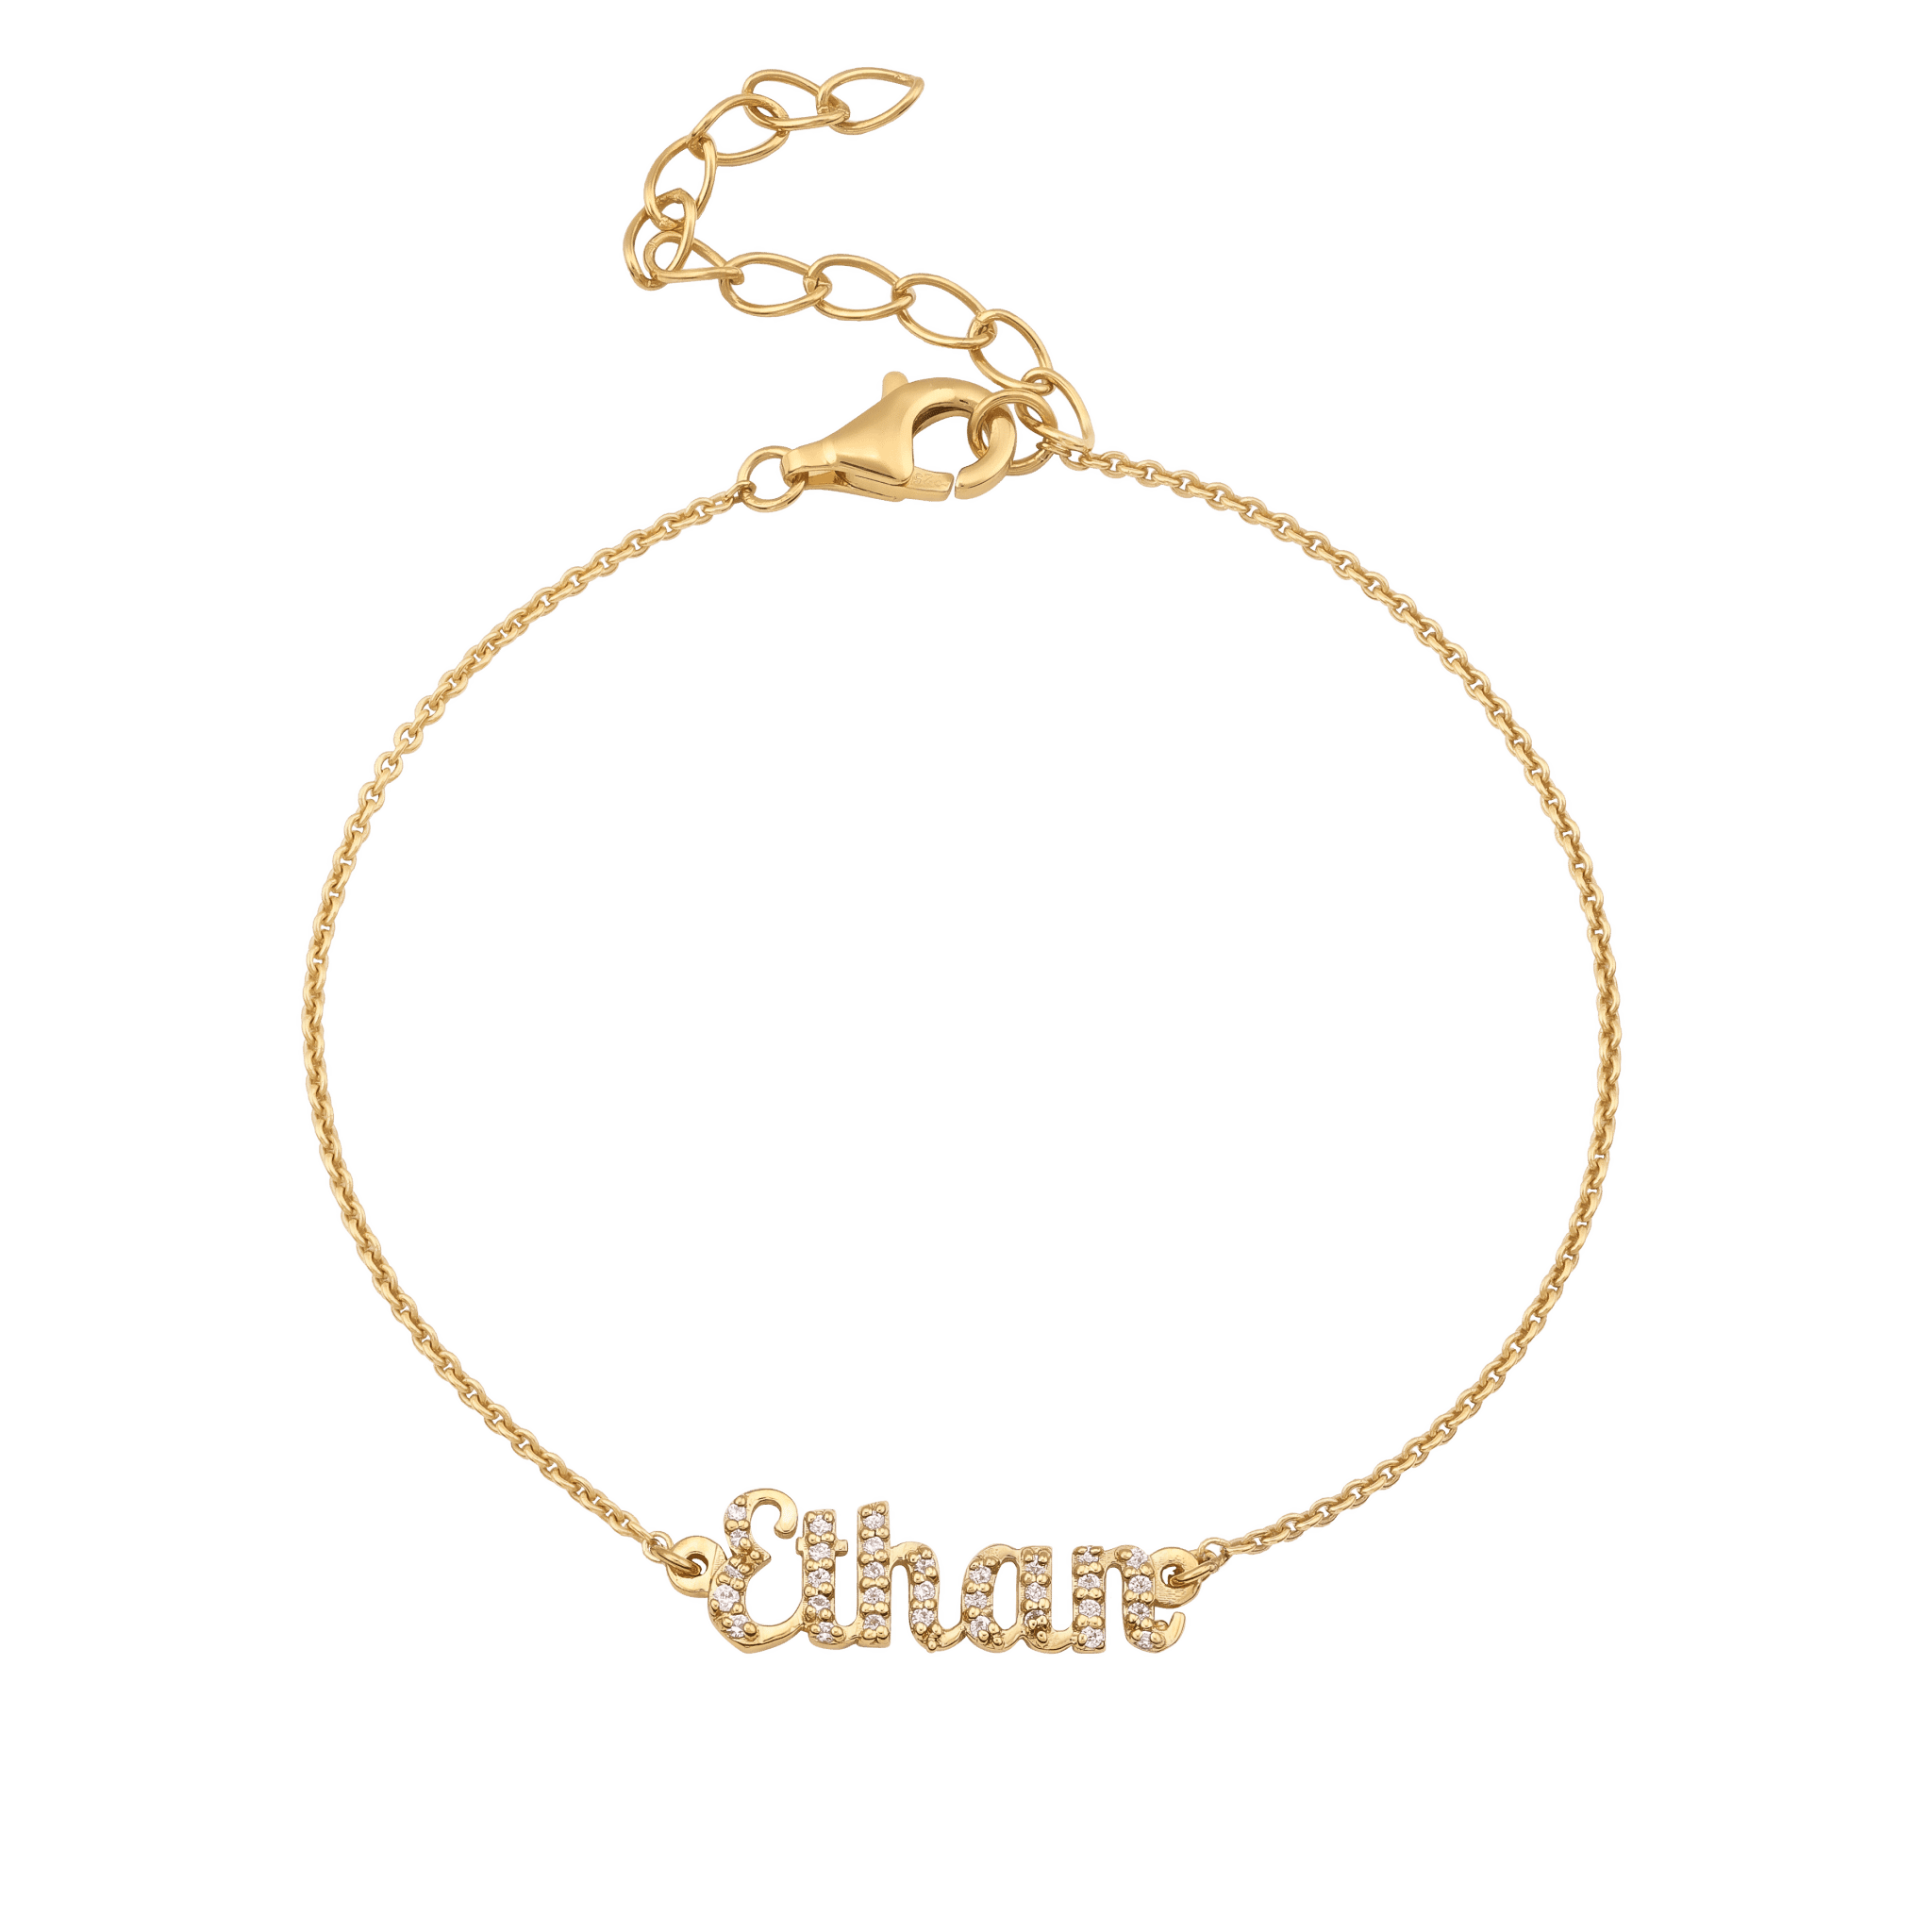 18k Gold Name Bracelet